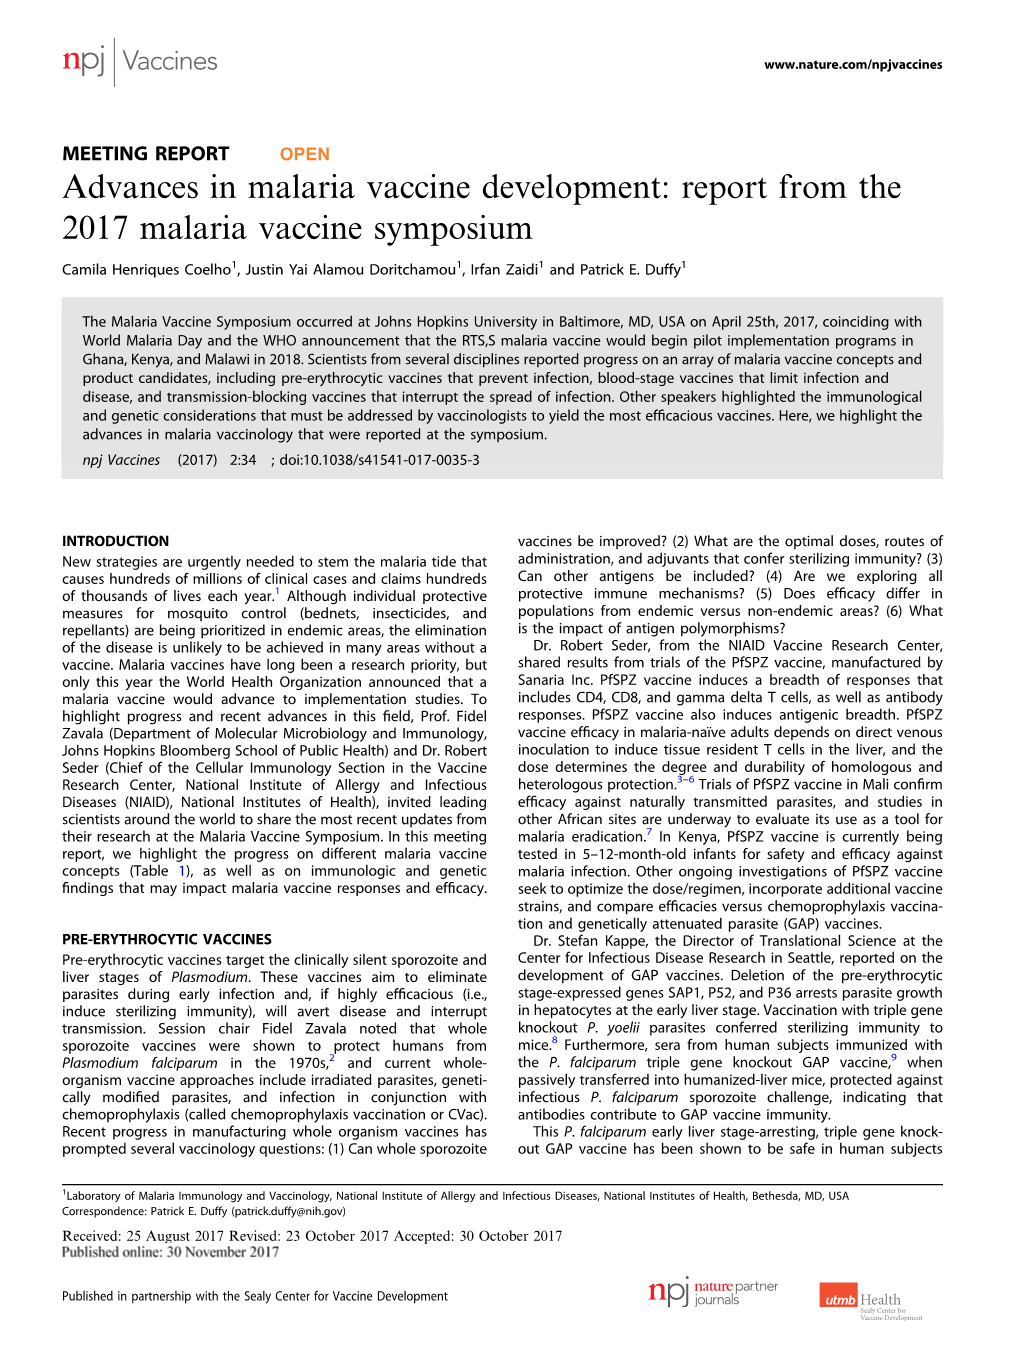 Report from the 2017 Malaria Vaccine Symposium